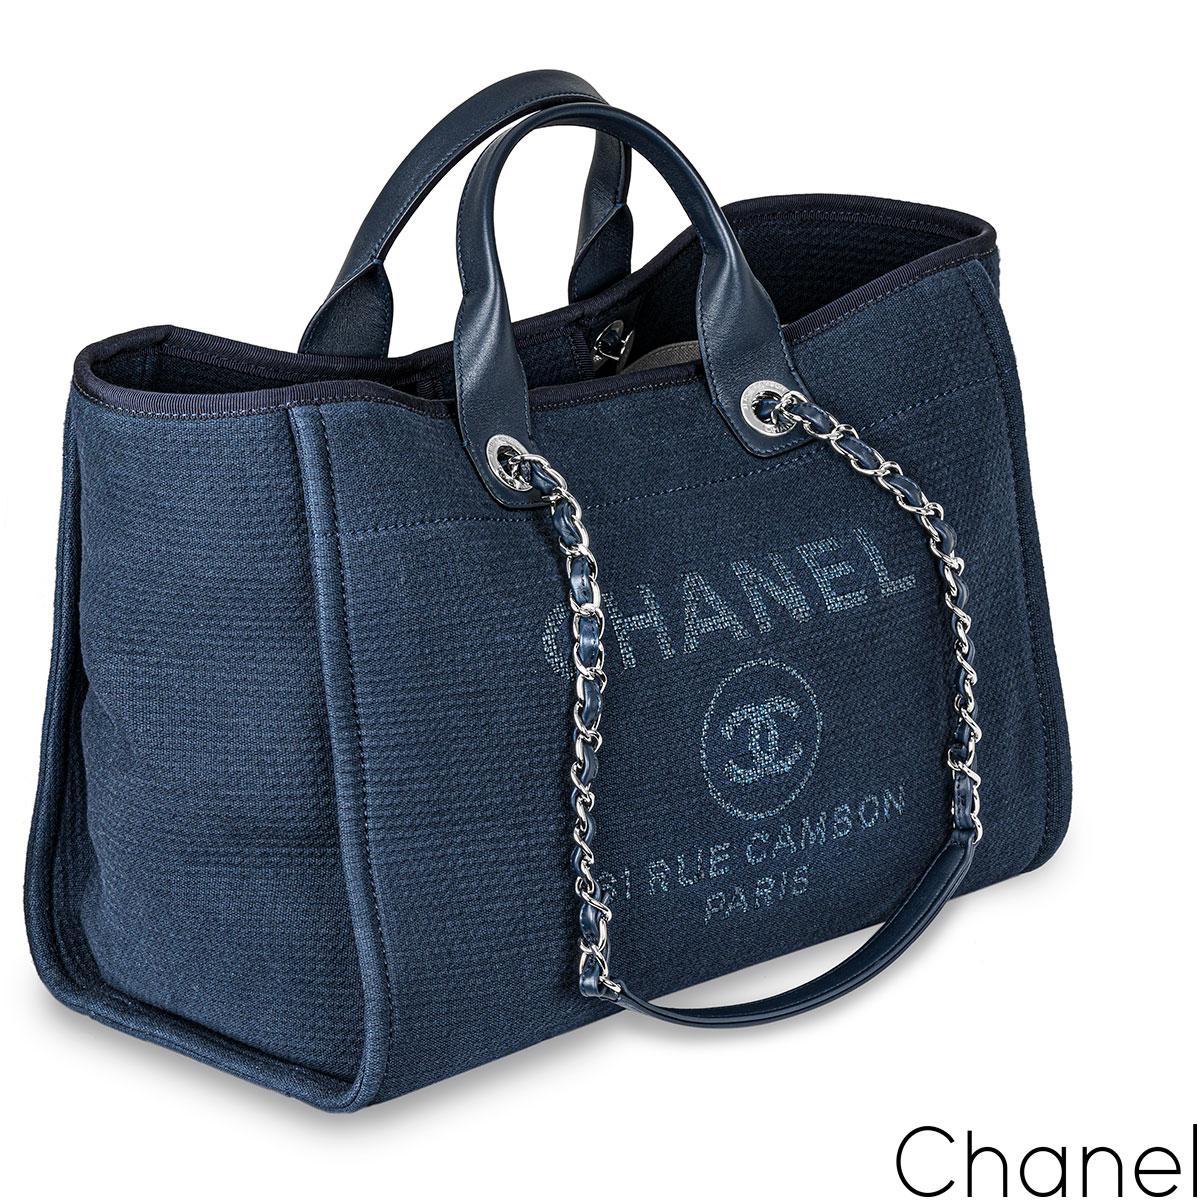 Un sac chic Chanel bleu Deauville Grand Shopping Tote. L'extérieur de ce fourre-tout est fabriqué en toile bleue avec des ferrures de couleur argentée. Il est composé d'une chaîne entrelacée, de bandoulières en cuir bleu et de deux poignées en cuir.